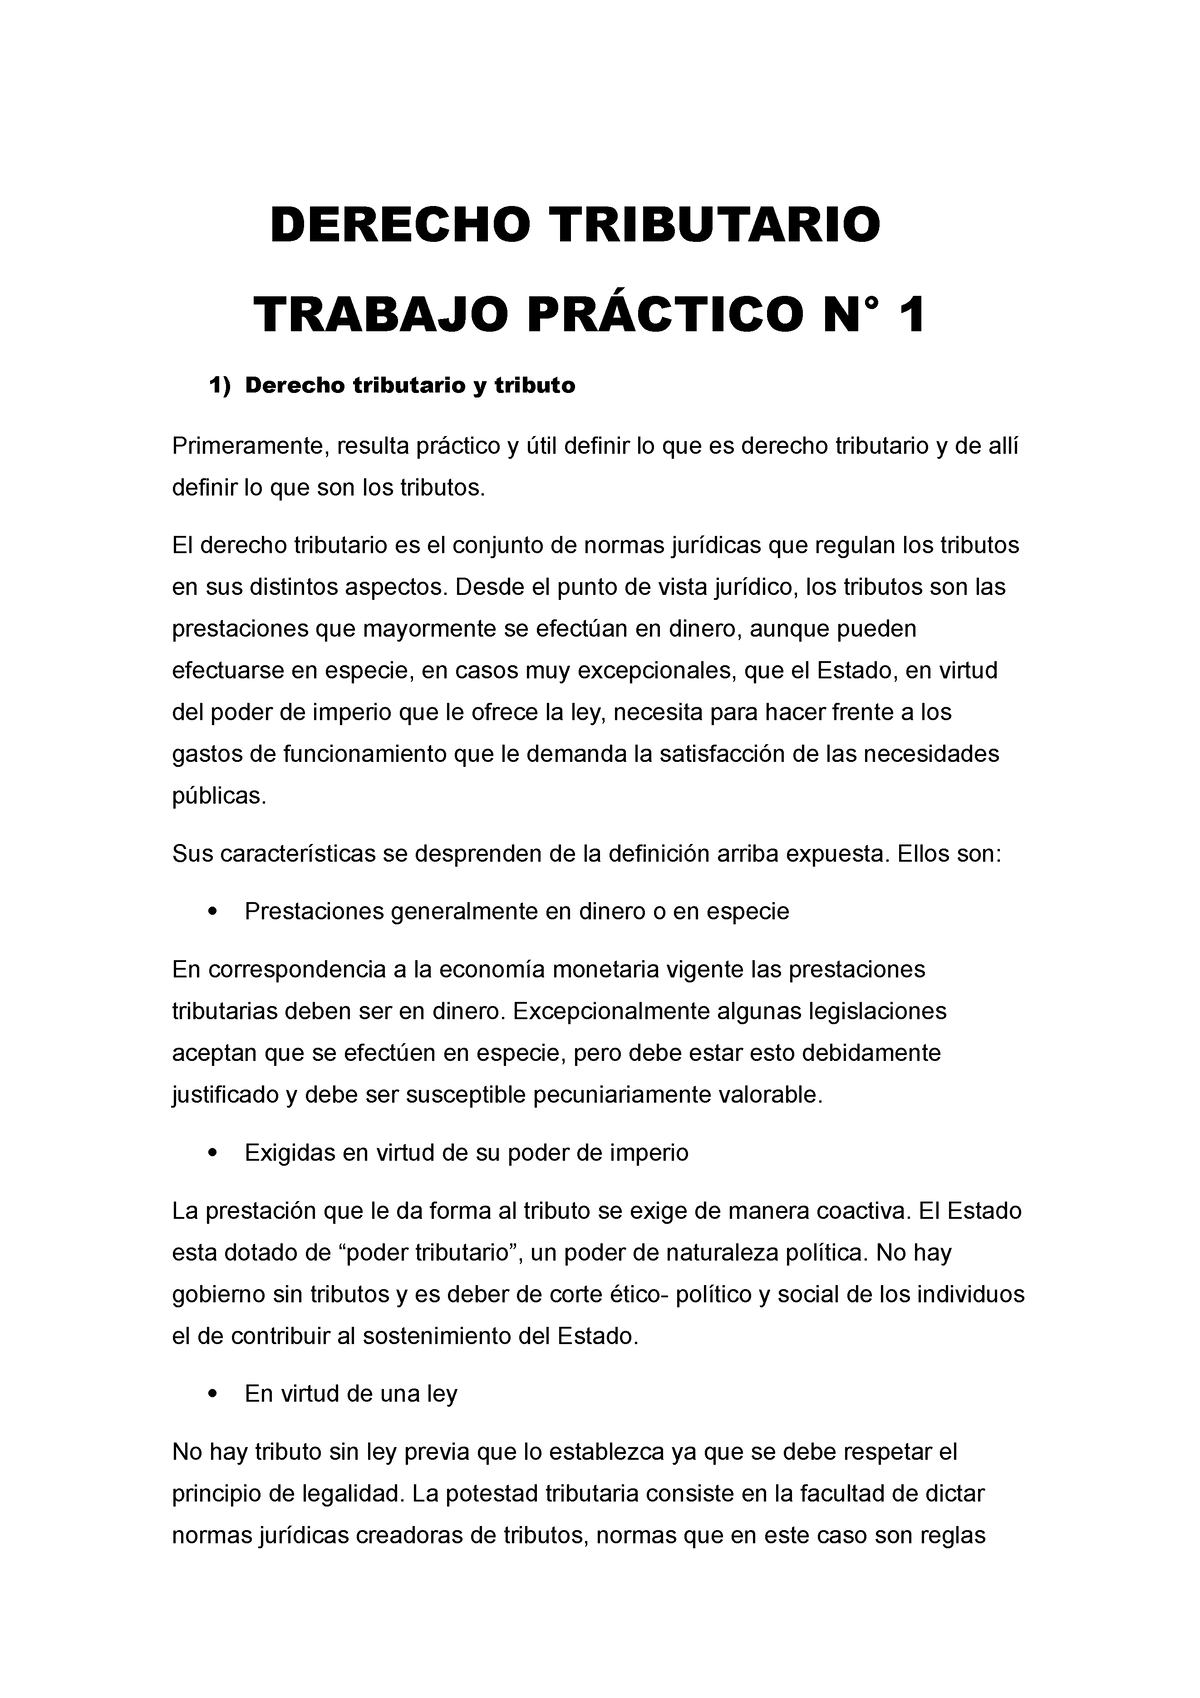 Derecho Tributario Tp 1 2022 Derecho Tributario Trabajo PrÁctico N° 1 Derecho Tributario Y 6271